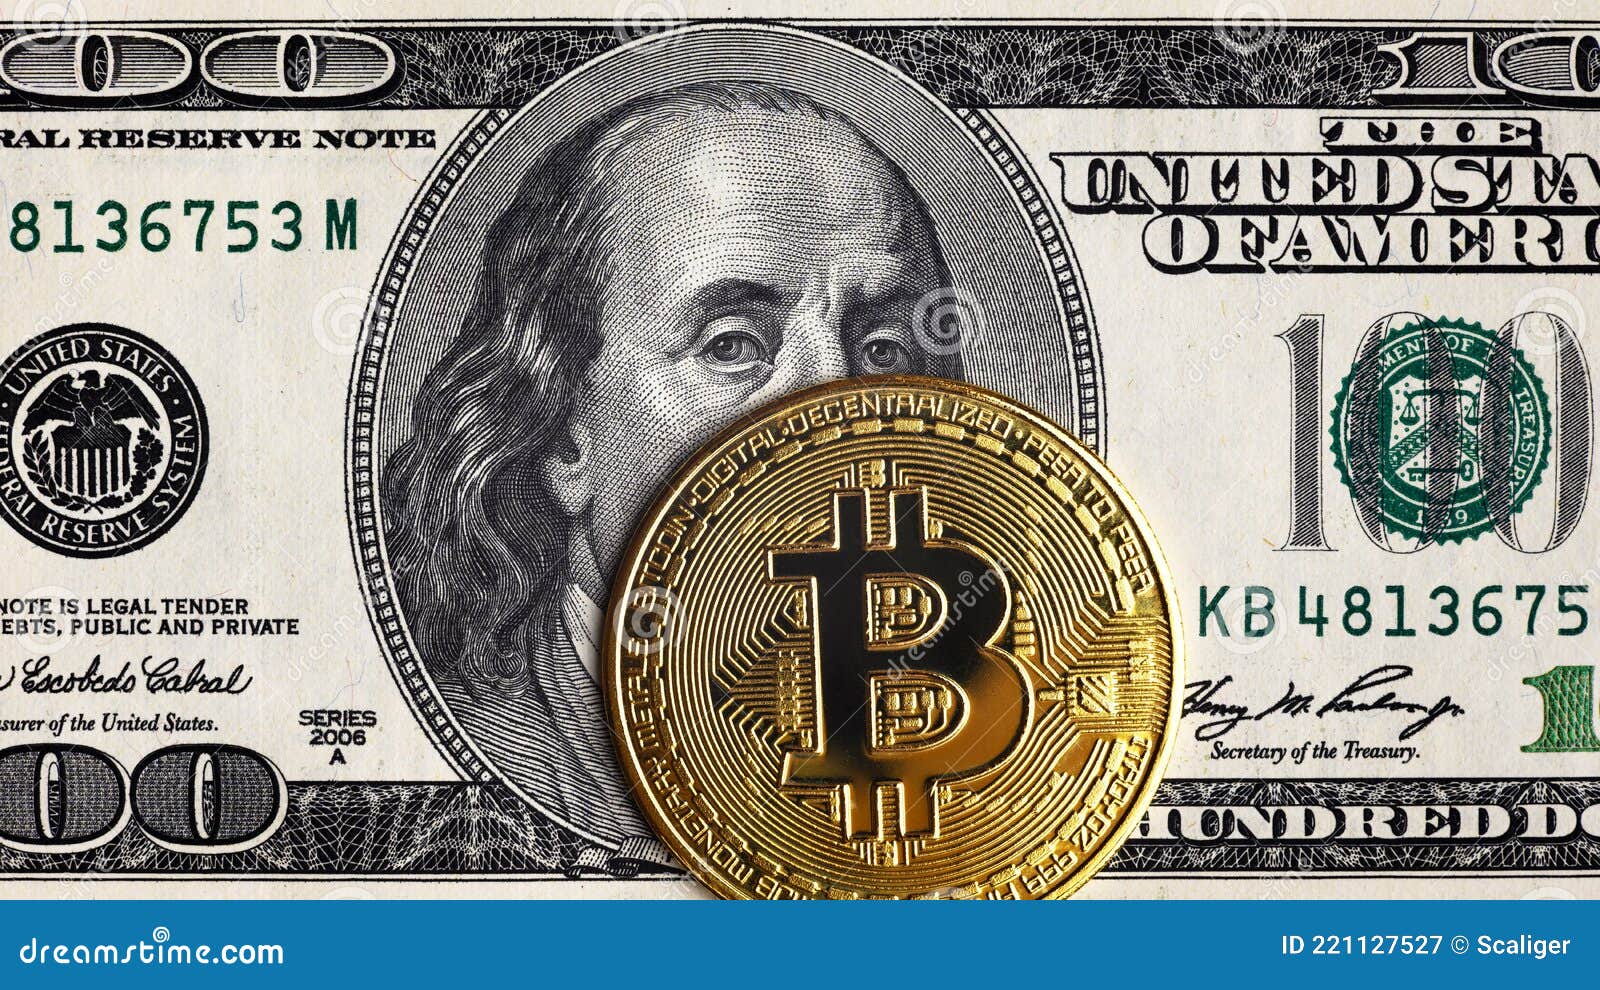 0.00211036 bitcoin to dollar